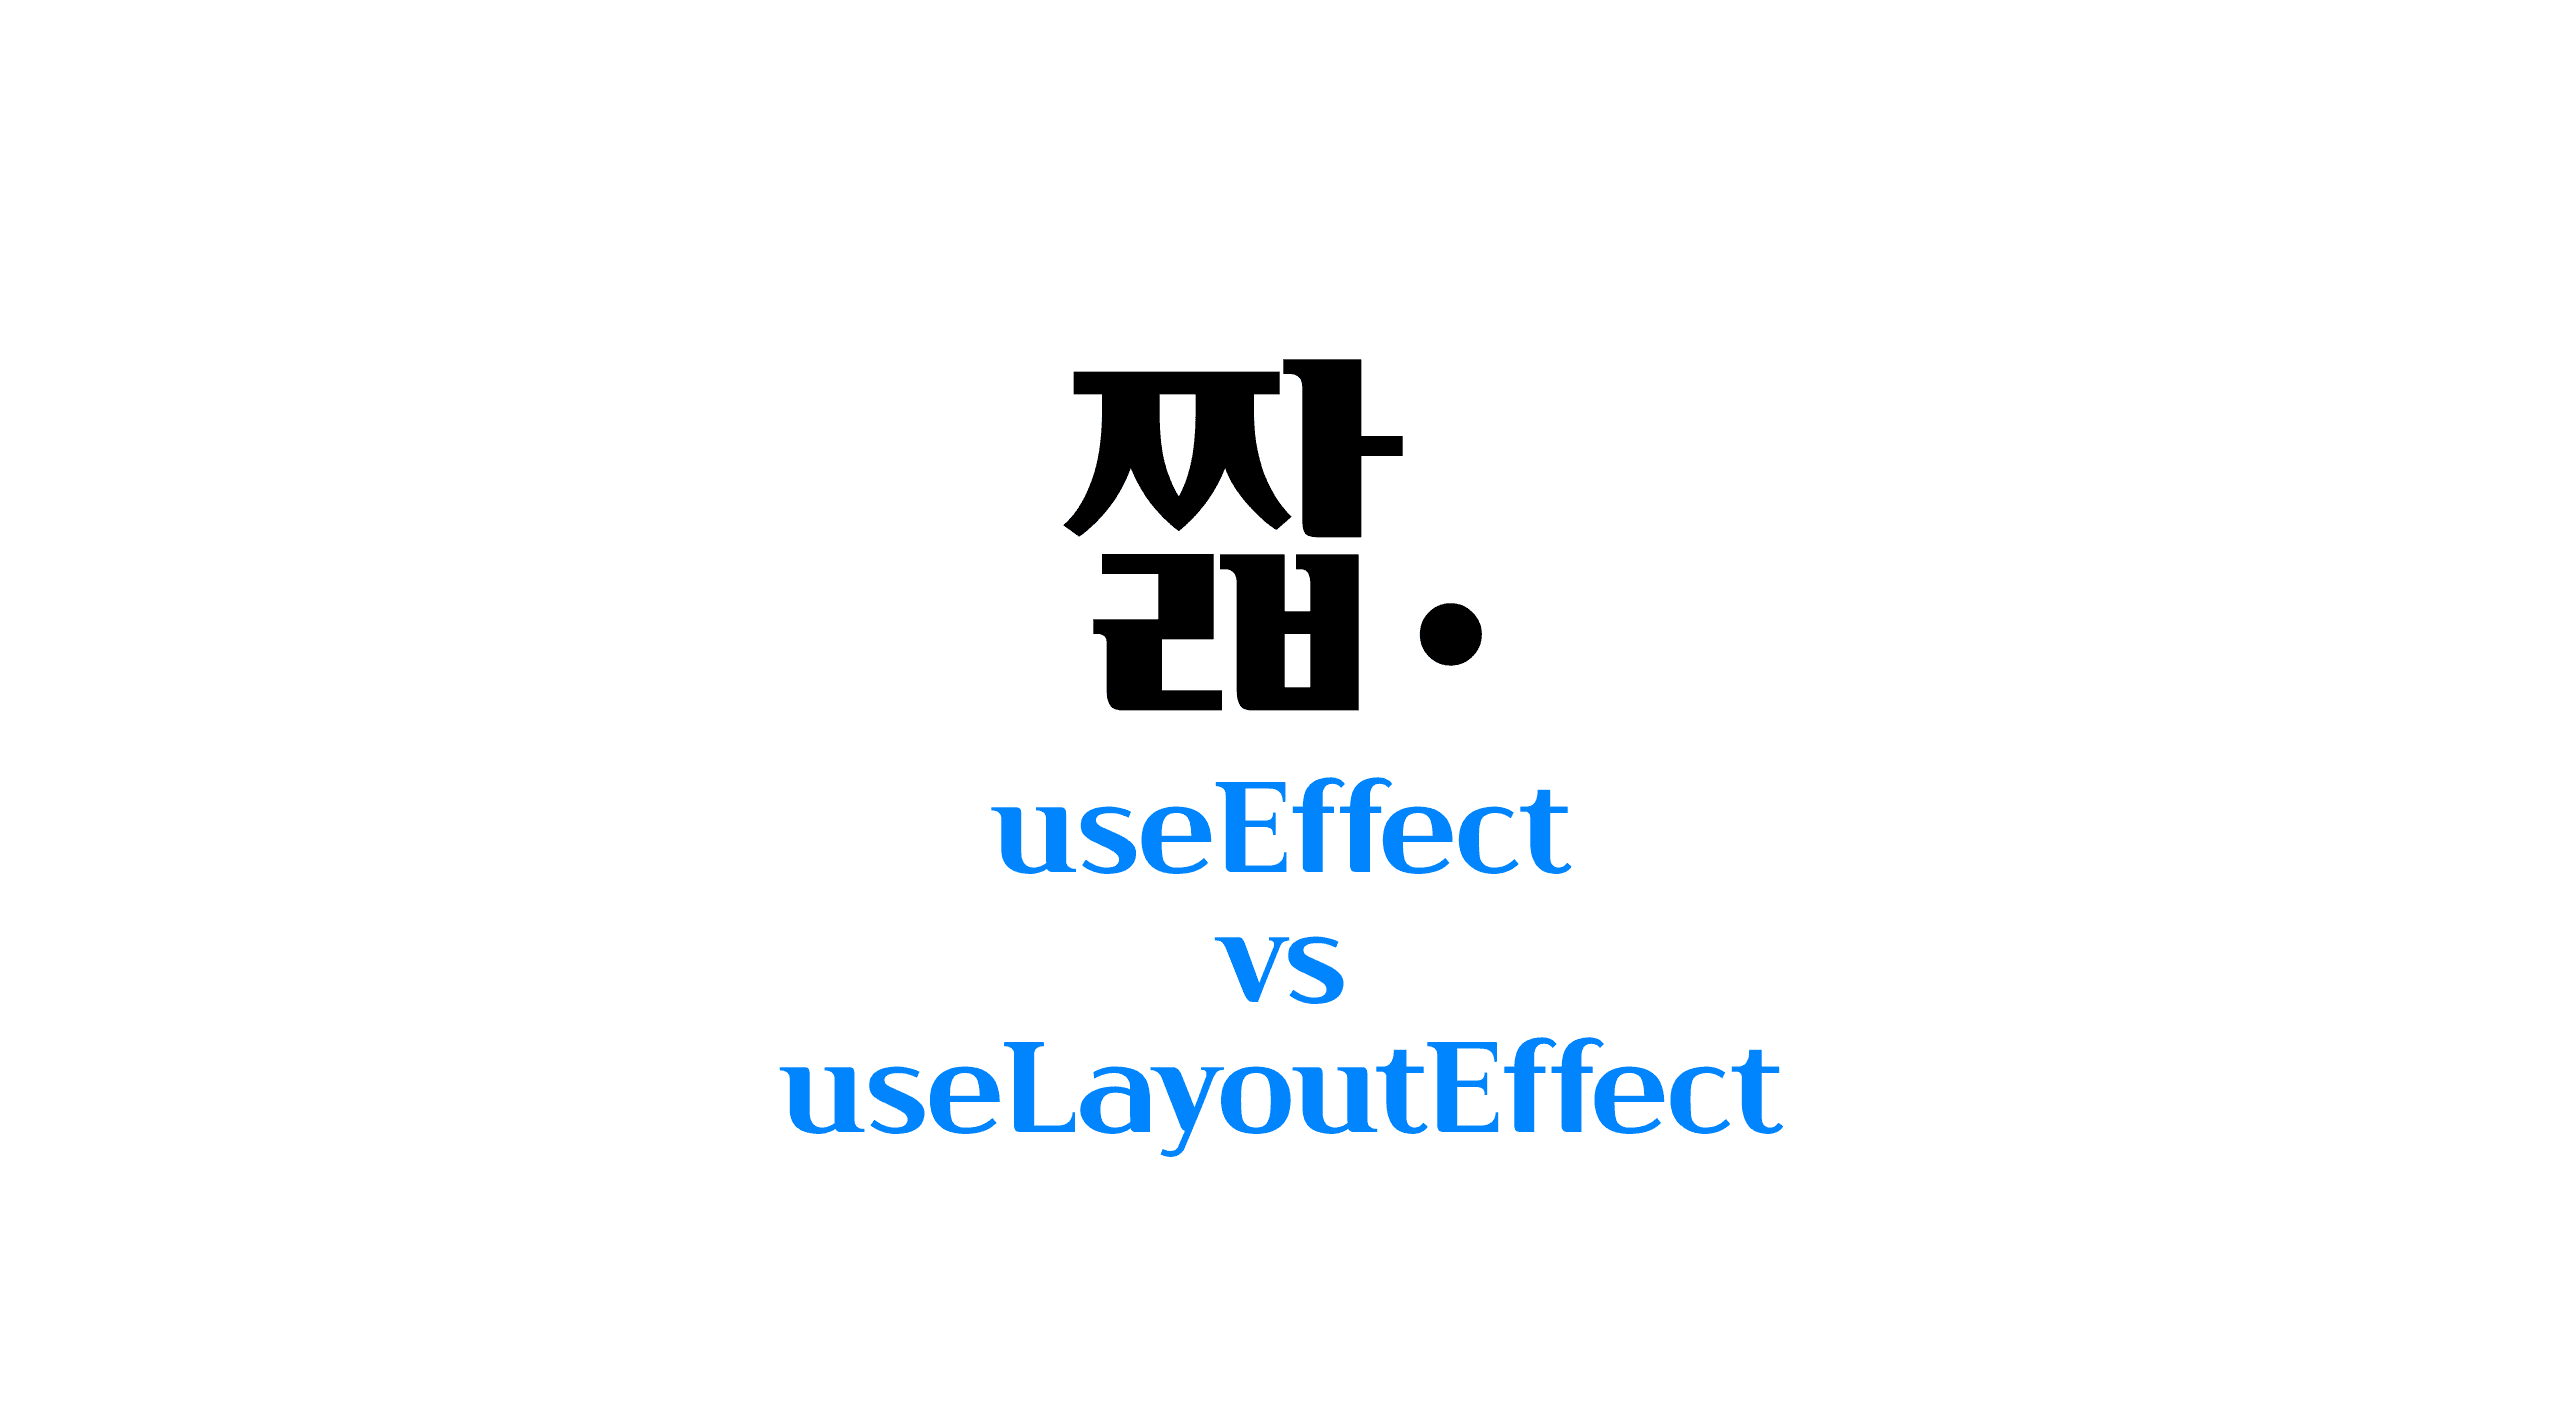 useeffect-vs-uselayouteffect cover image